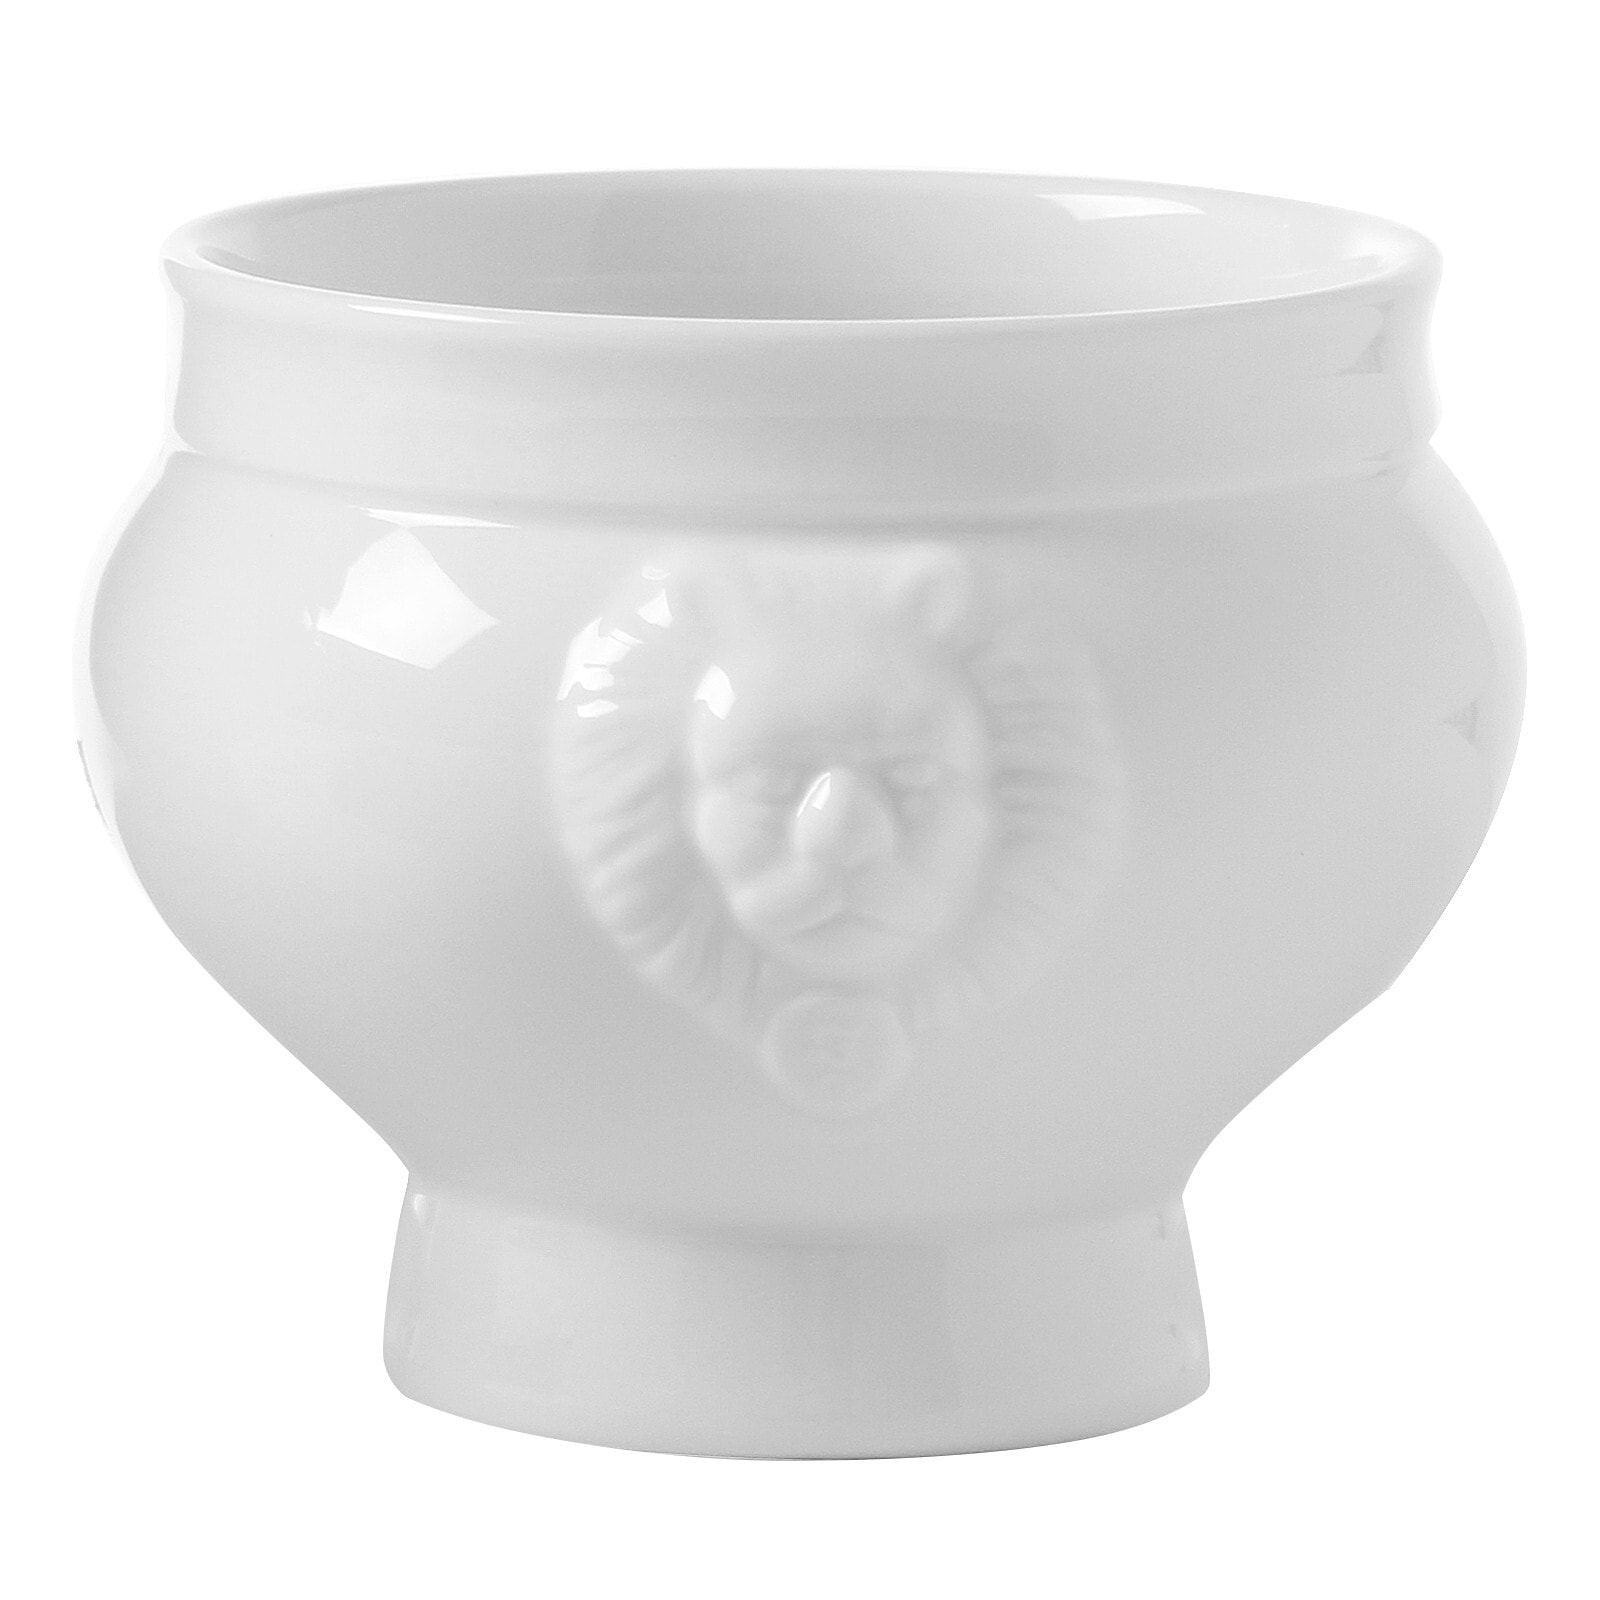 Soup bowl LIONHEAD white porcelain 125ml - Hendi 784778